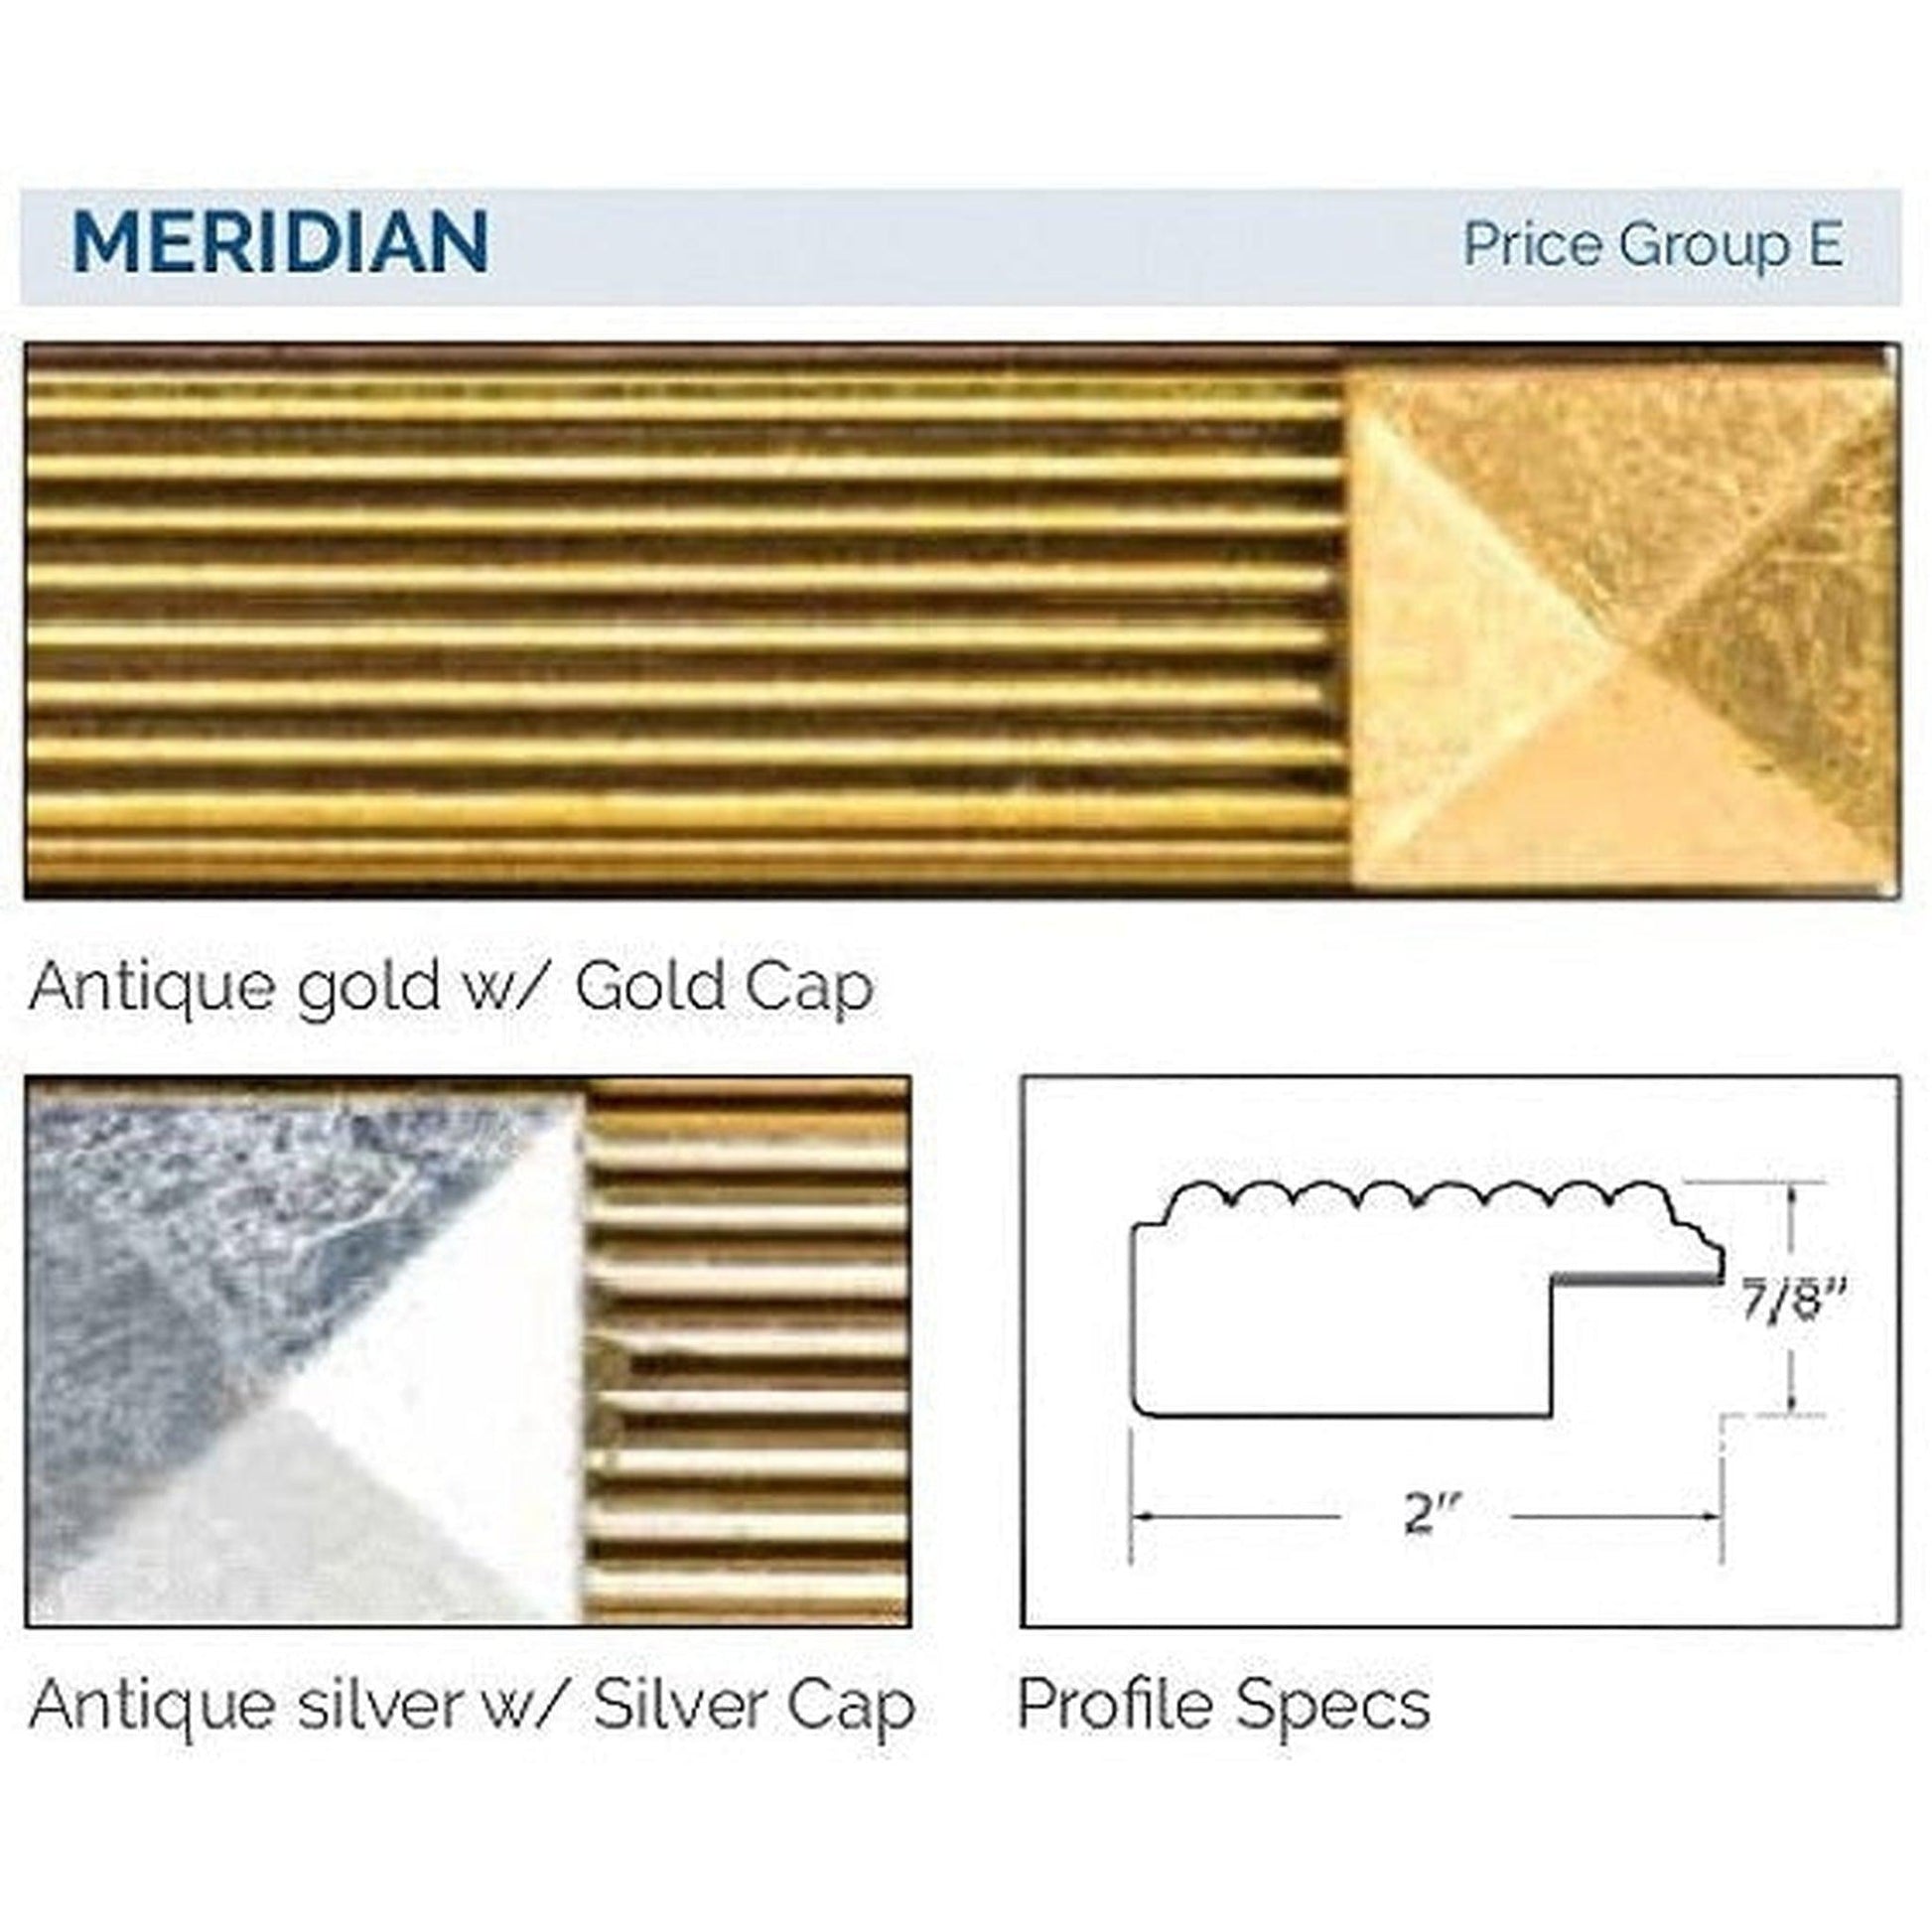 Afina Signature 58" x 30" Meridian Antique Gold With Antique Gold Caps Recessed Four Door Medicine Cabinet With Beveled Edge Mirror